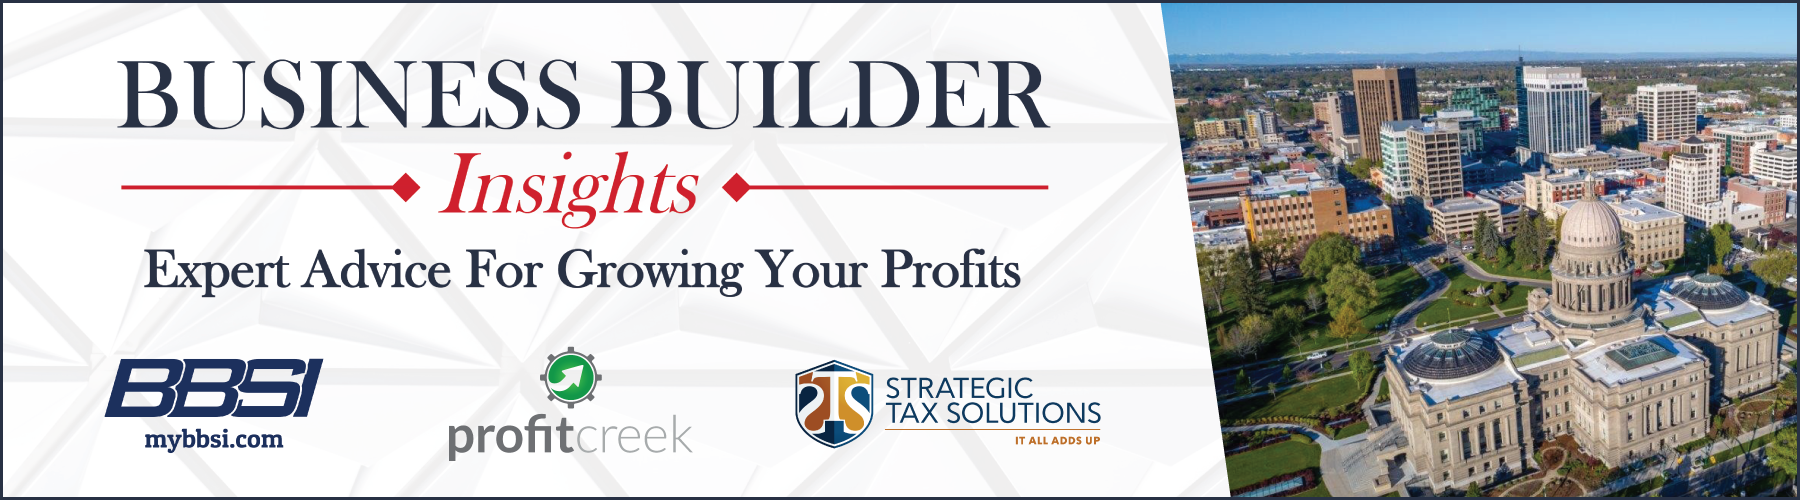 Business Builder Insights Slider